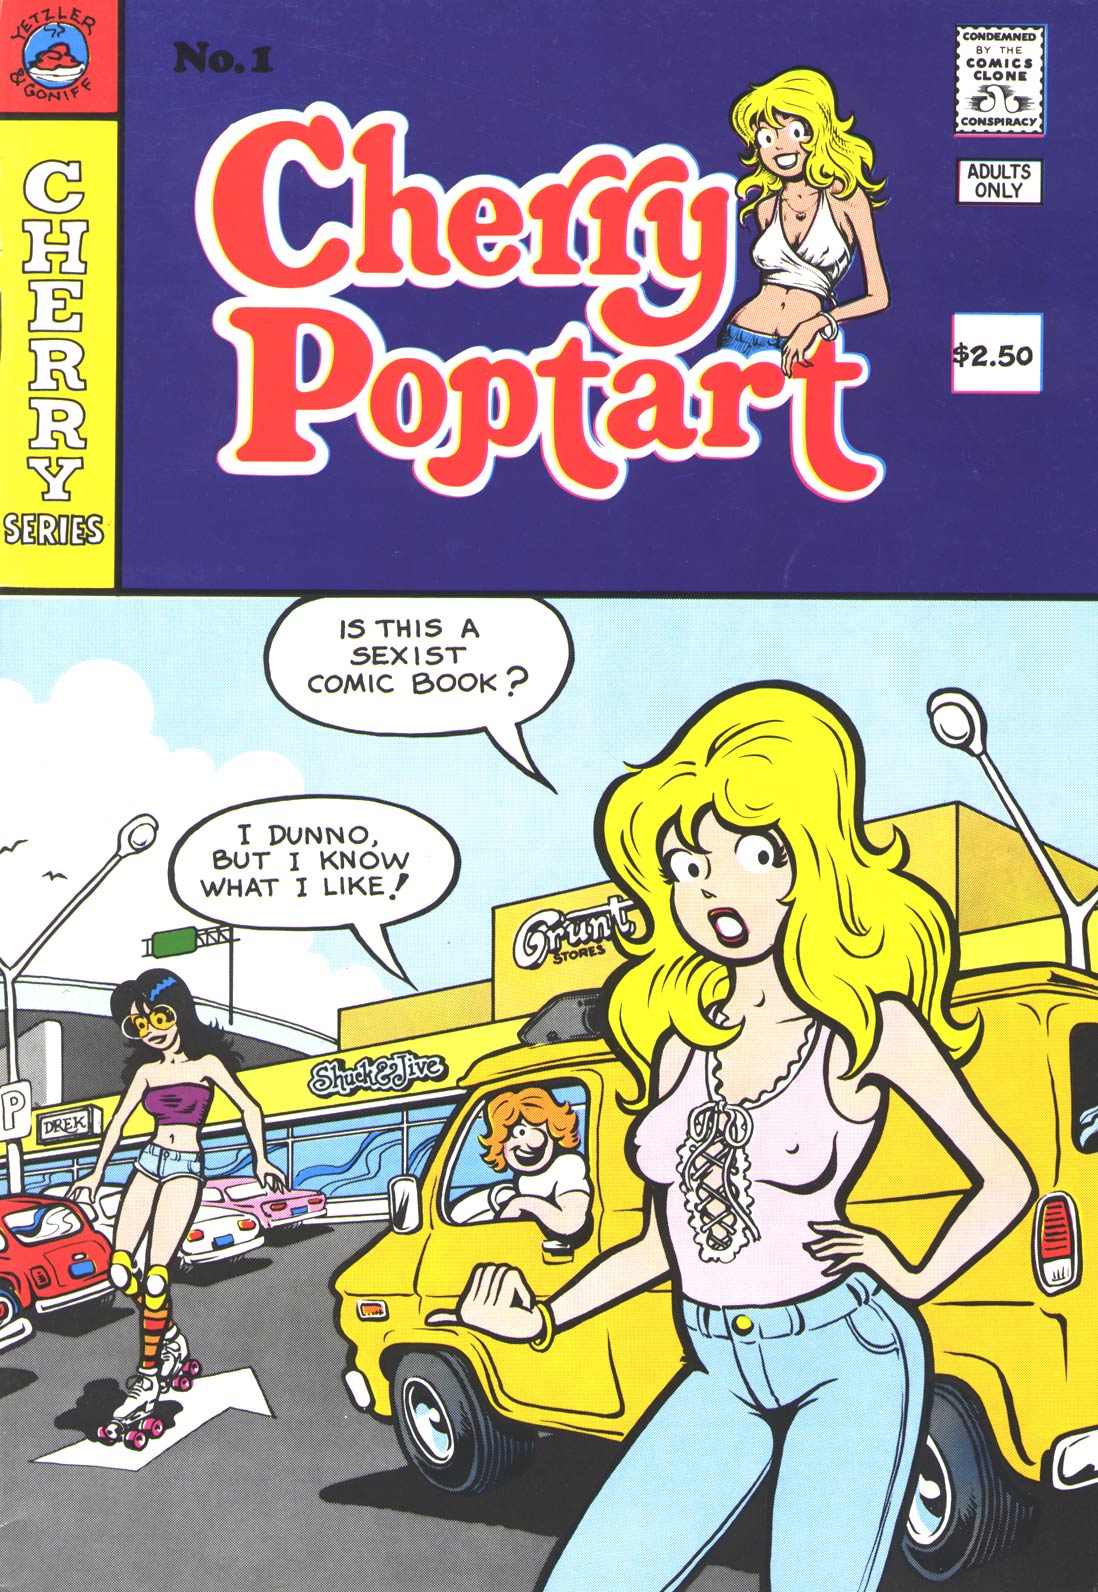 PORNOFOKKER: - - - CHERRY POPTART - - - # 1 / 2 / 3 - - -